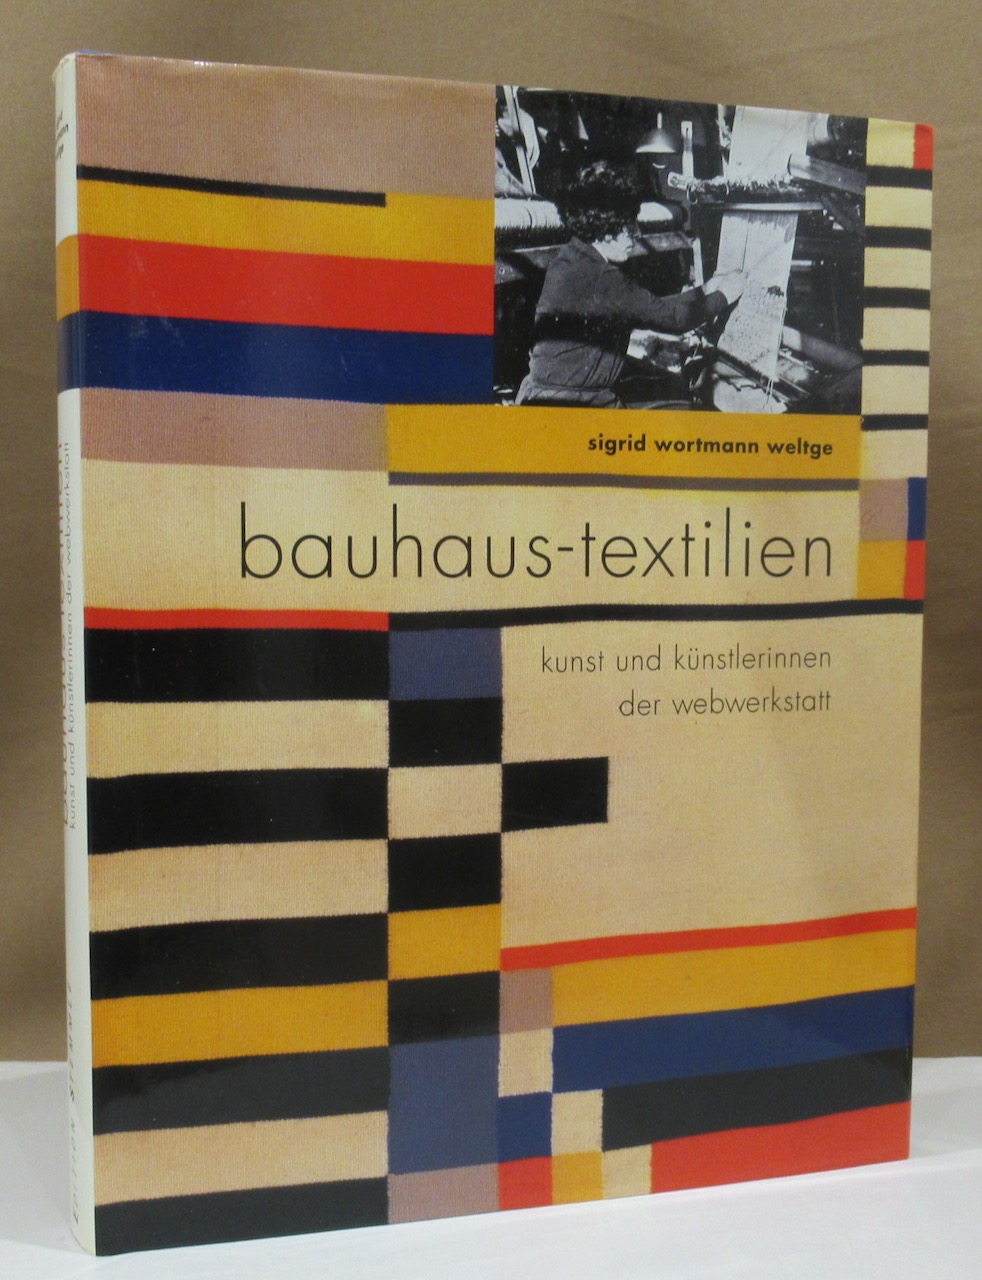 bauhaus-textilien. kunst und künstlerinnen der webwerkstatt. - Bauhaus - Wortmann Weltge, Sigrid.